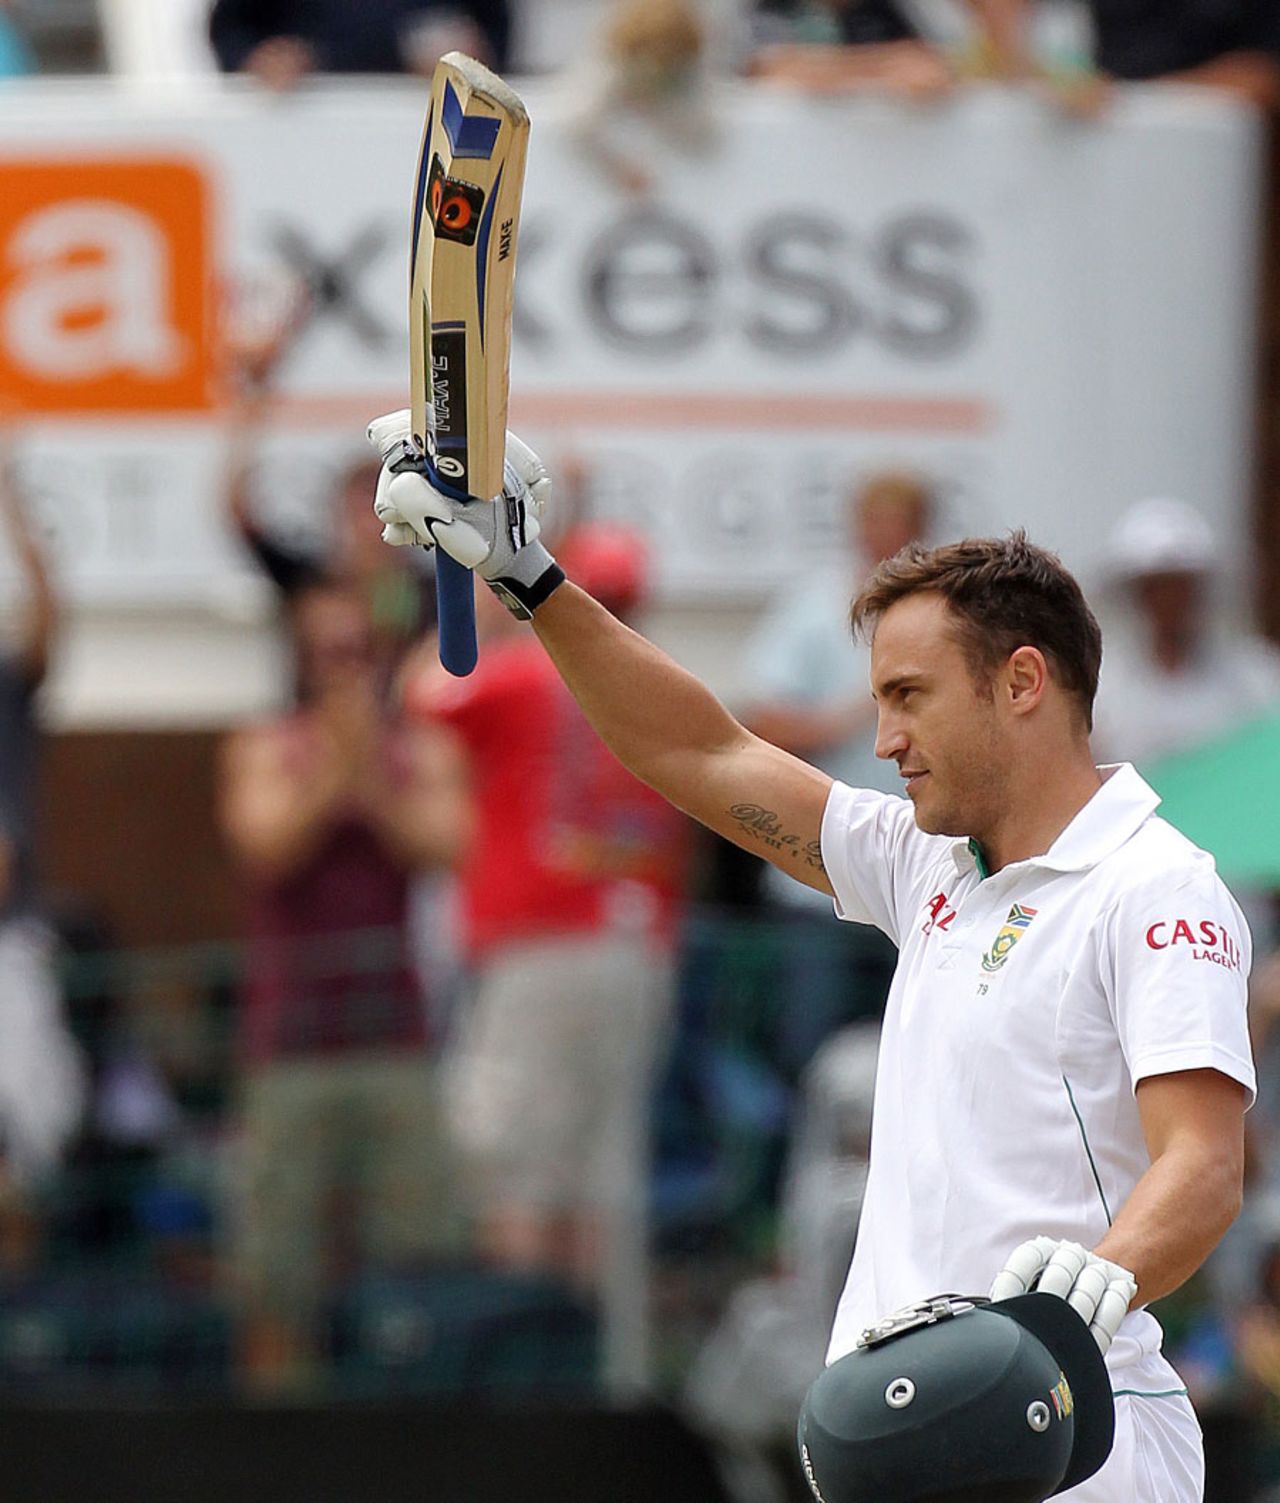 Faf du Plessis celebrates his second Test hundred, South Africa v New Zealand, 2nd Test, Port Elizabeth, 2nd day, January 12, 2013